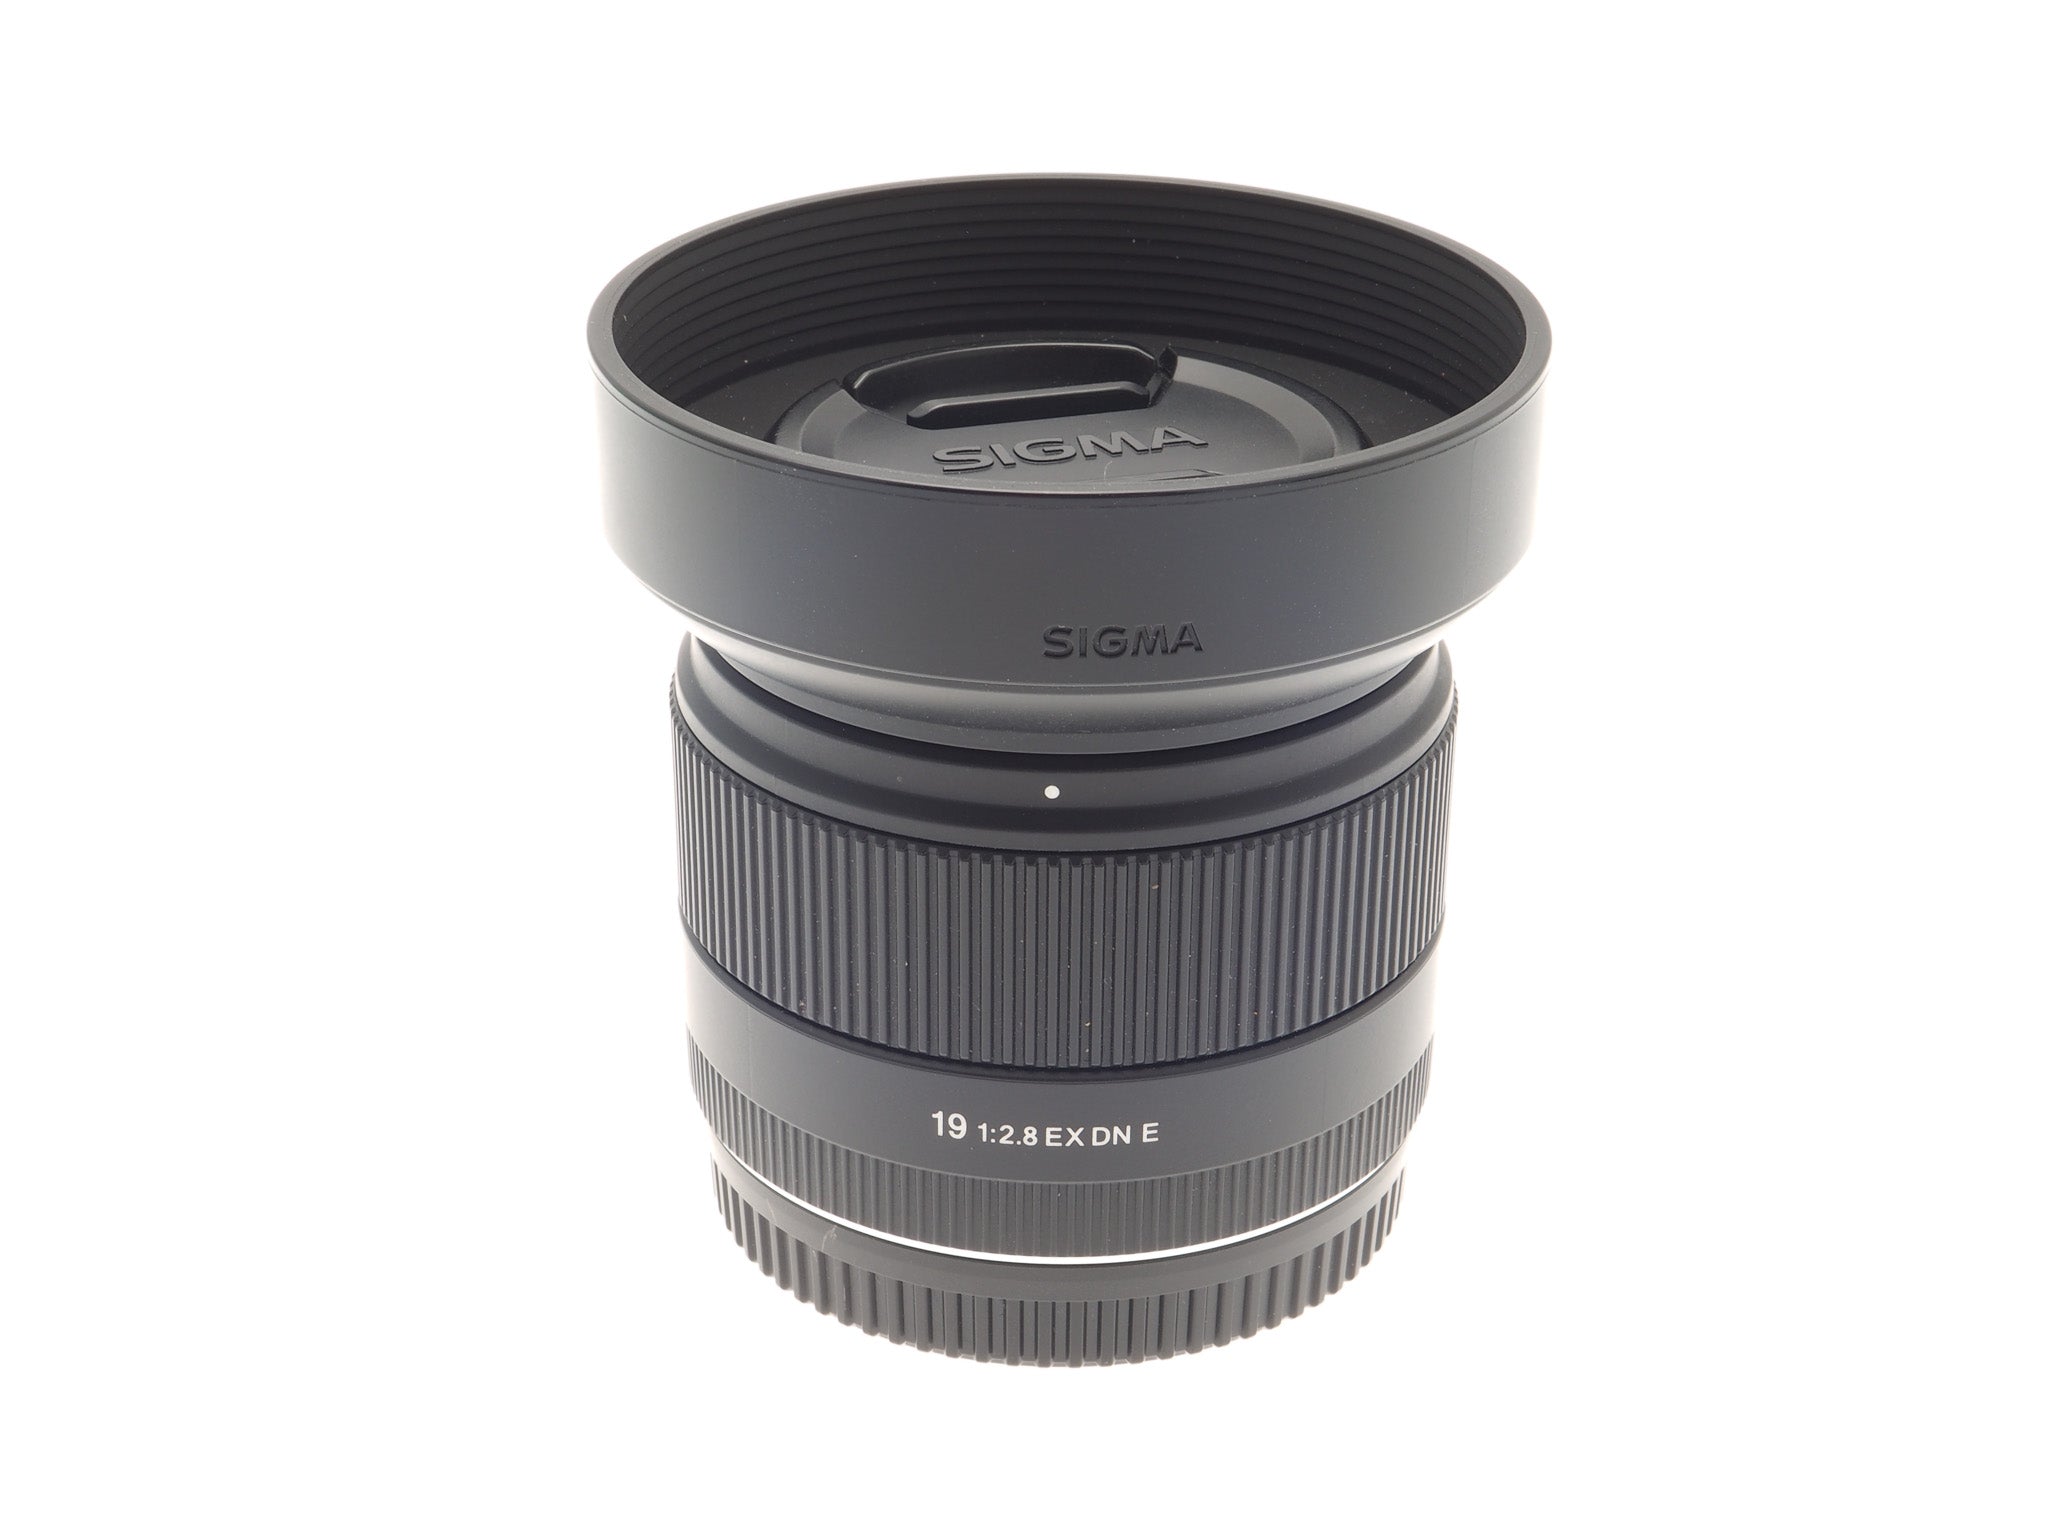 Sigma 16mm f1.4 DC DN Contemporary - Lens – Kamerastore